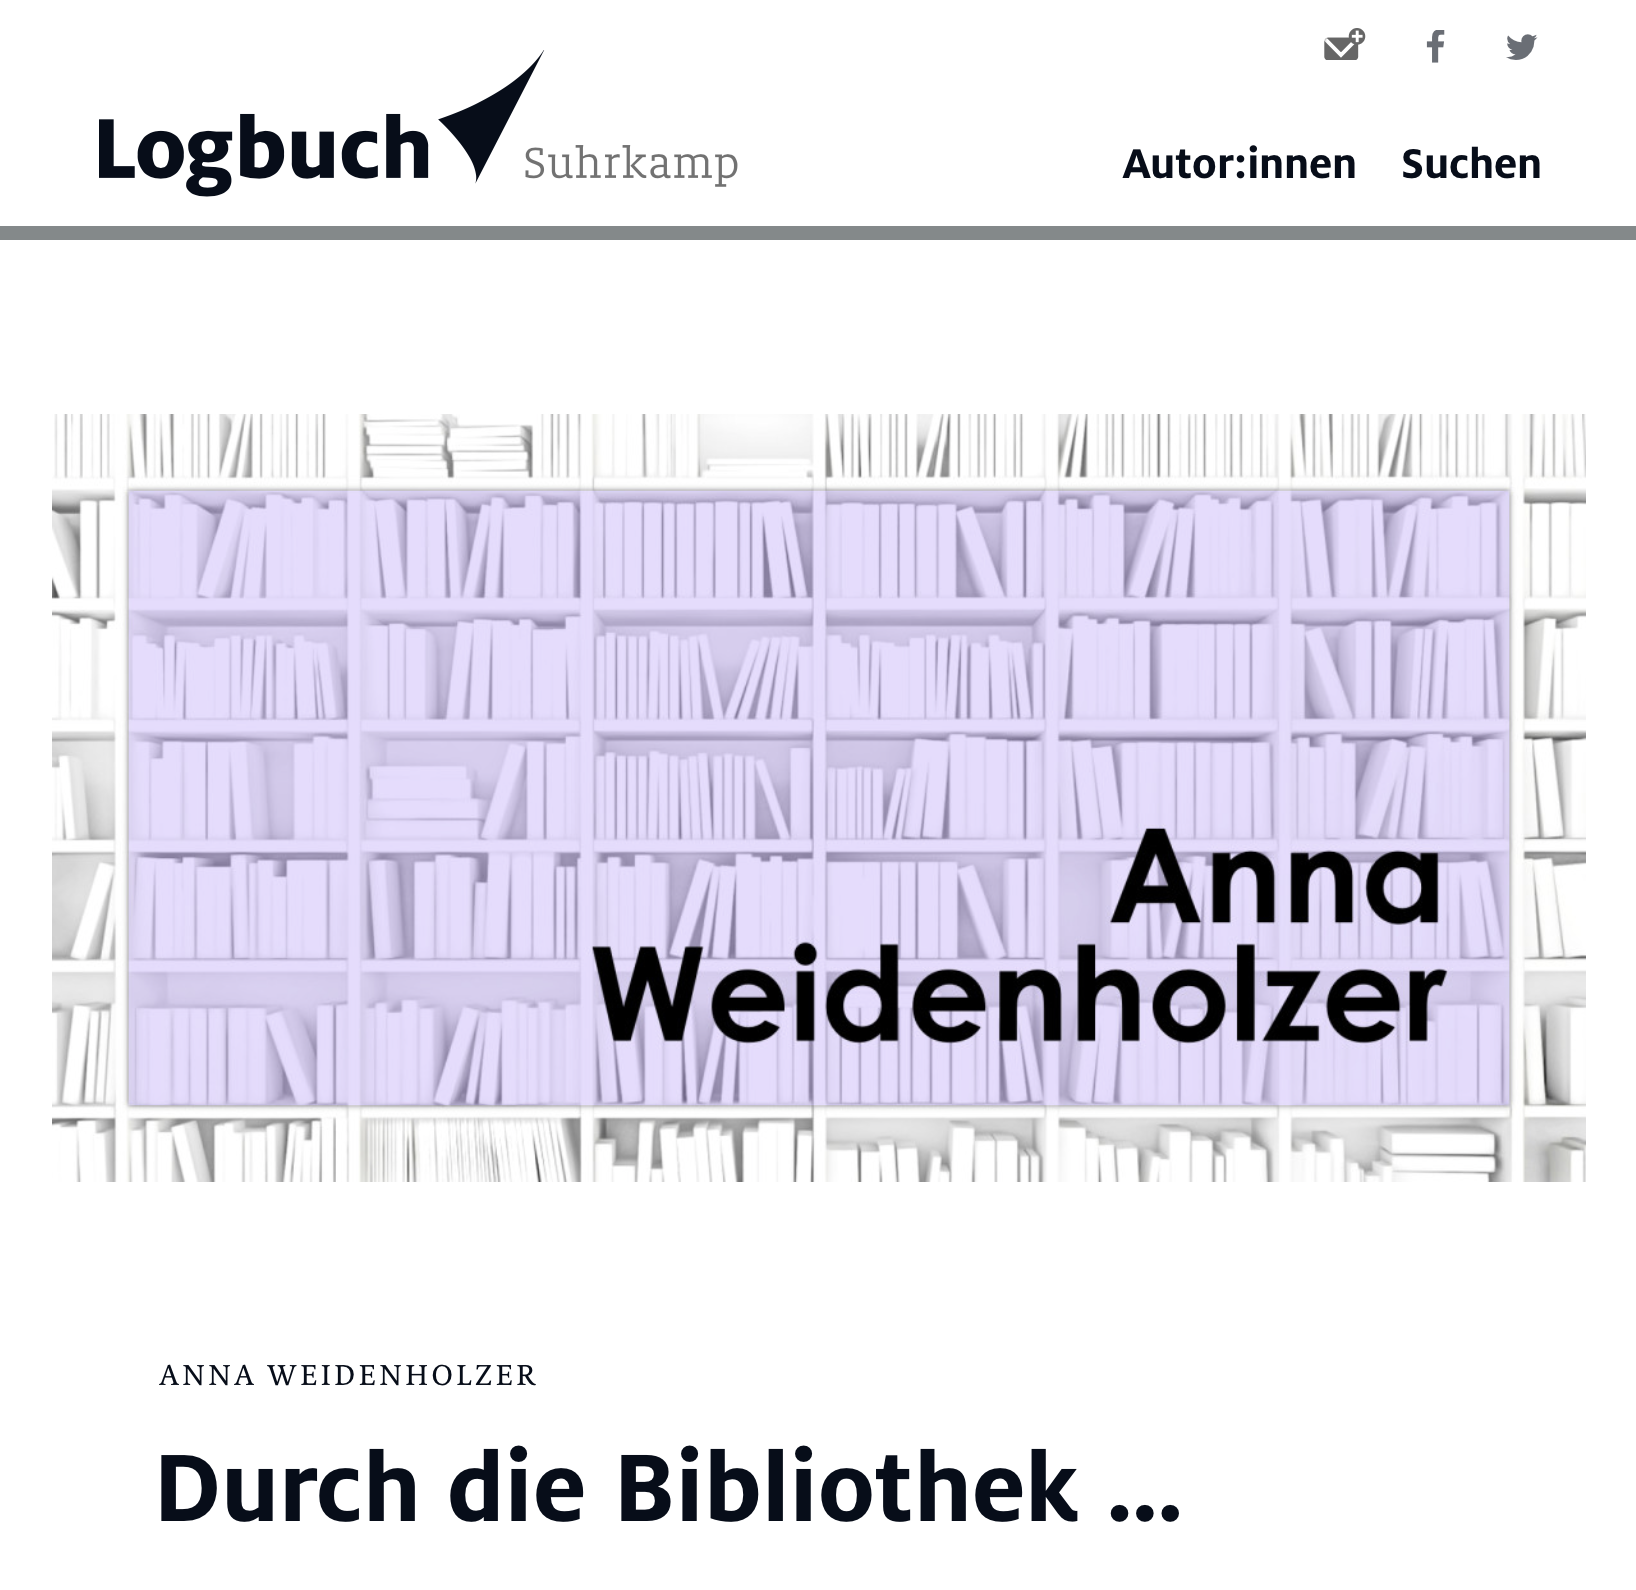 Logbuch Surkamp Berlin Anna Weidenholzer